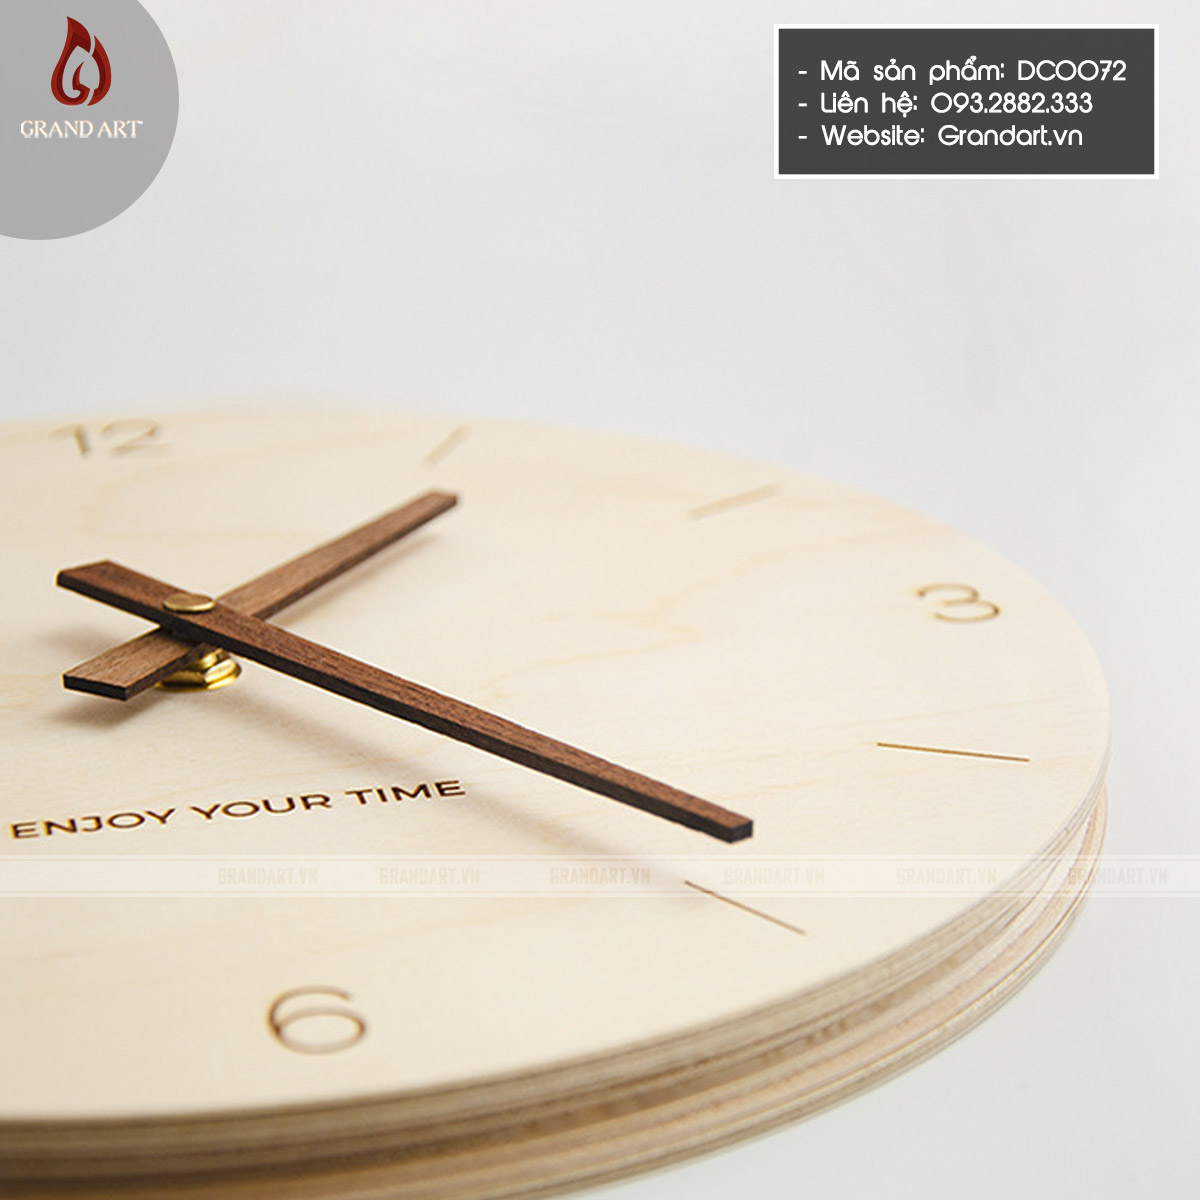 đồng hồ treo tường bằng gỗ - DC0072